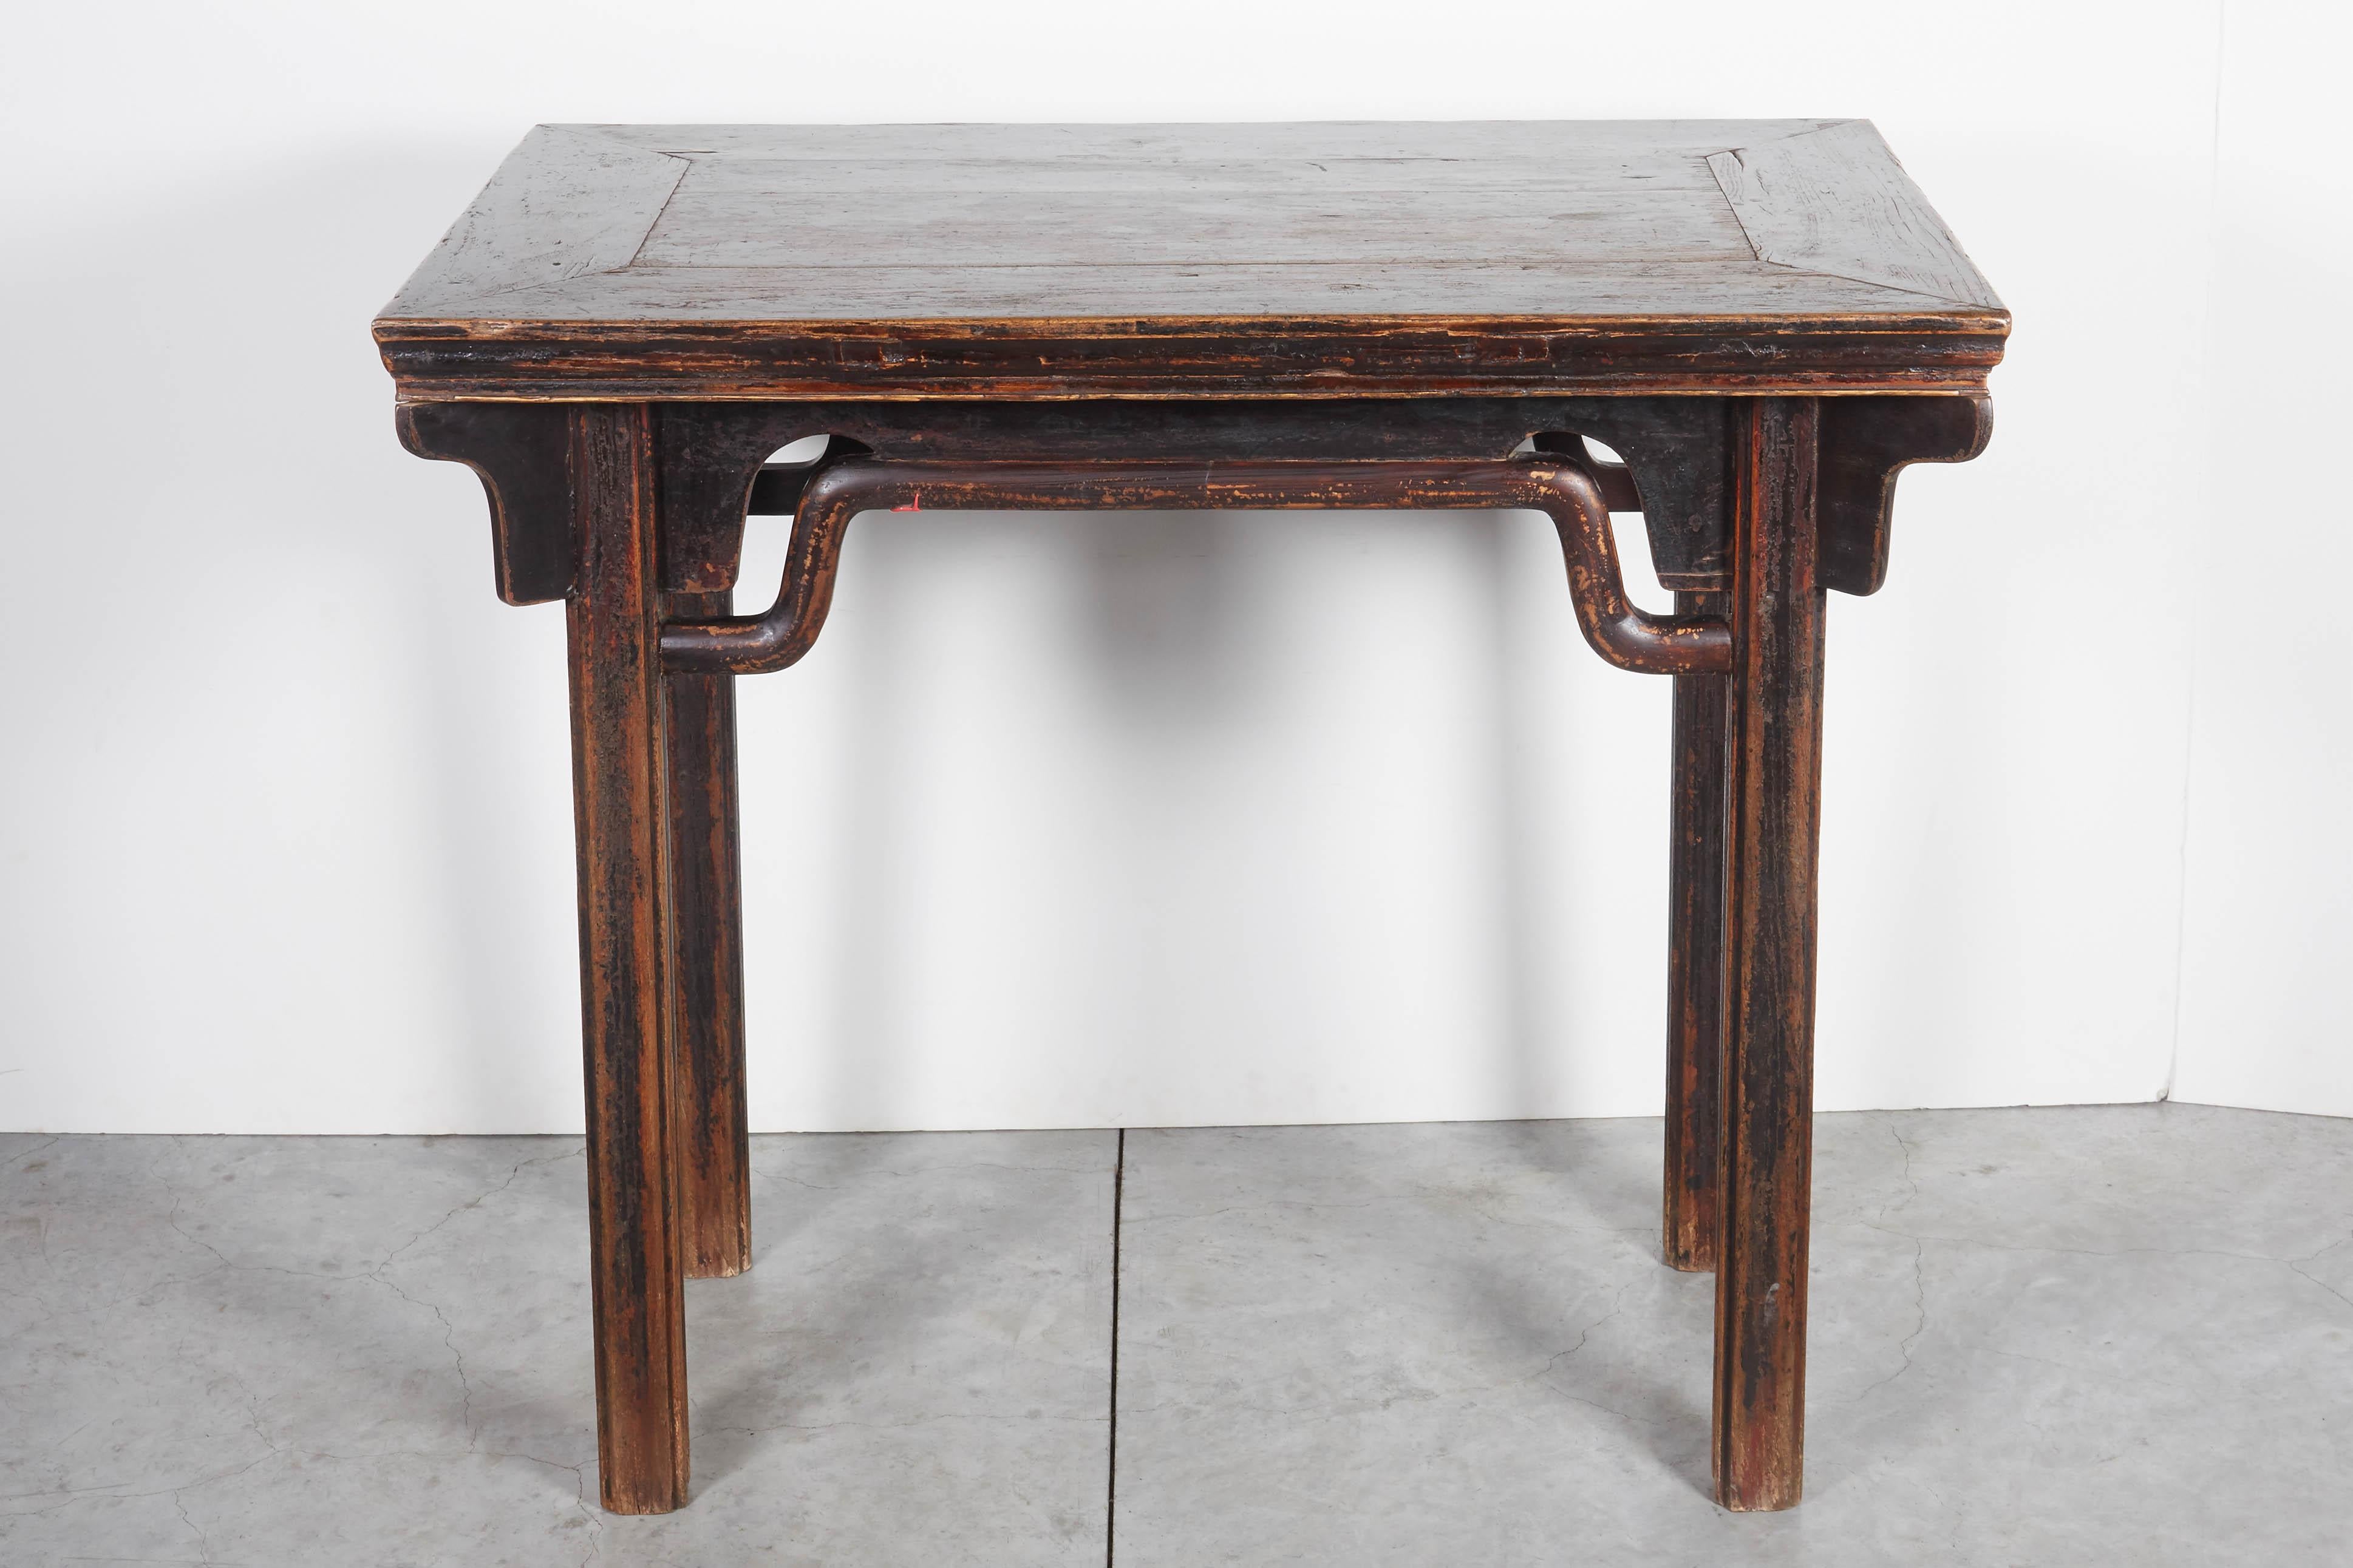 Ein klassischer, anmutig gestalteter antiker chinesischer Weintisch mit ausgeprägten Buckelstreckern und schöner Patina. Dieser Tisch wurde wahrscheinlich in einem chinesischen Haus des 19. Jahrhunderts als Altar verwendet.
T559.